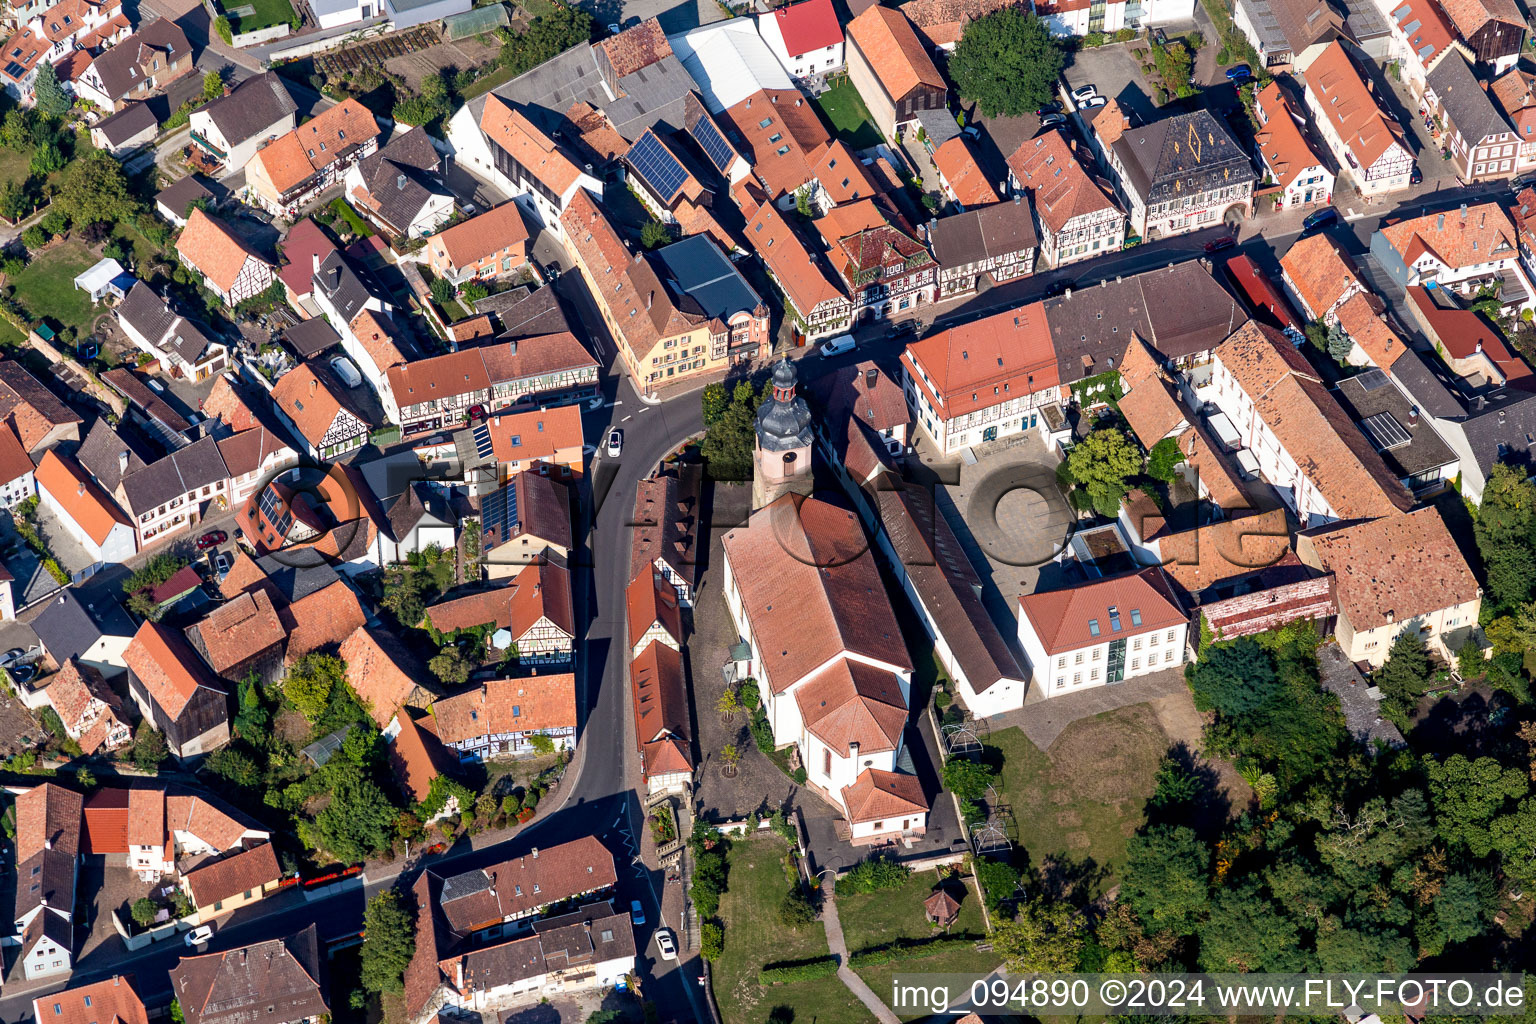 Vue aérienne de Bâtiment de l'église de la paroisse catholique au centre du village à Rheinzabern dans le département Rhénanie-Palatinat, Allemagne